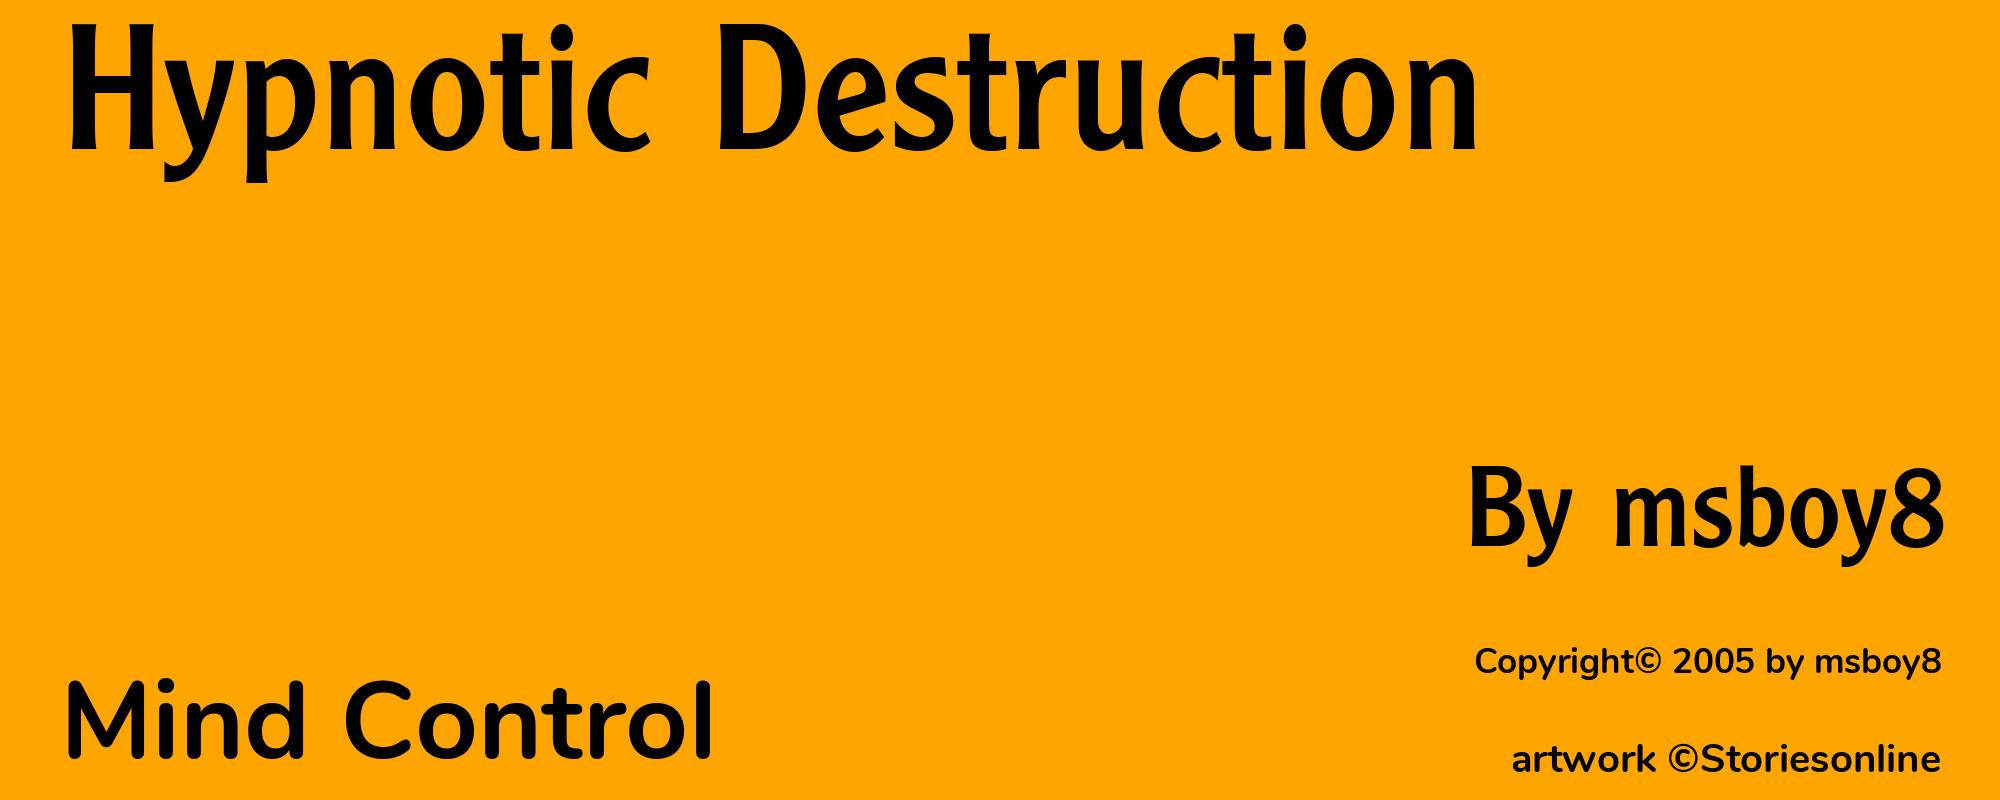 Hypnotic Destruction - Cover